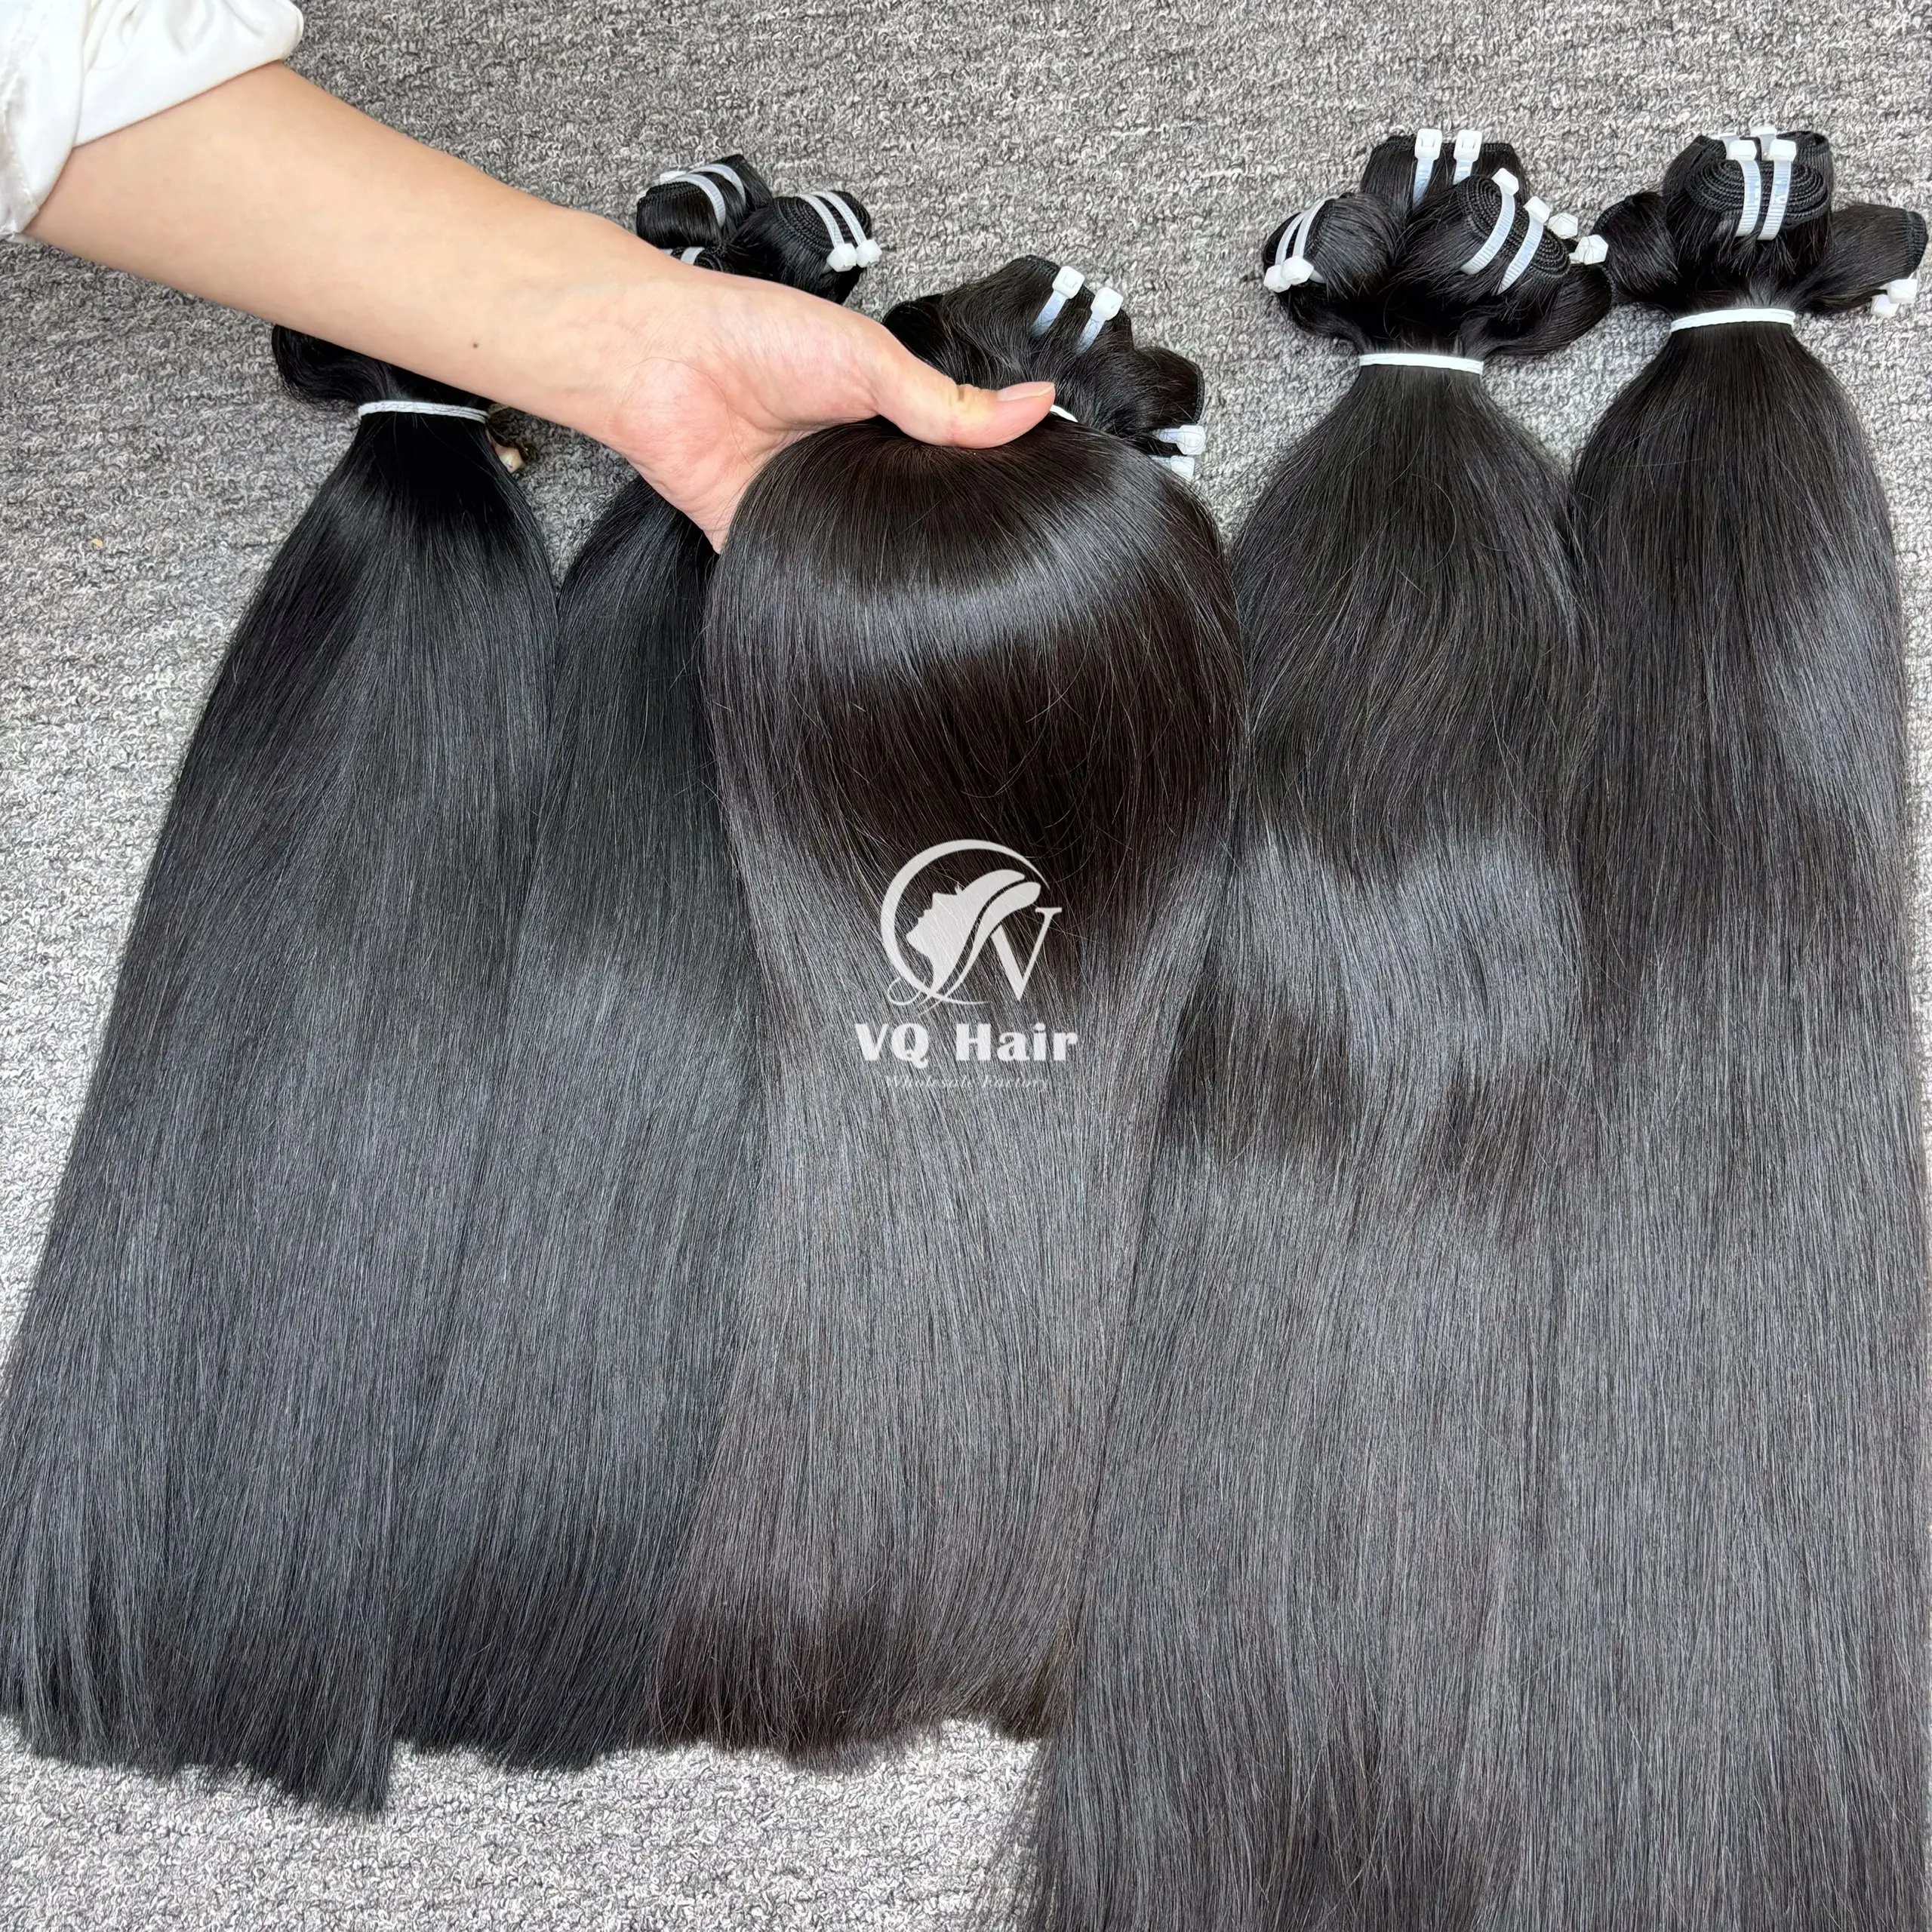 Sıcak satış doğal düz saç yüksek kalite siyah kadınlar için vietnamca İŞLENMEMİŞ SAÇ demetleri toptan fiyatlar